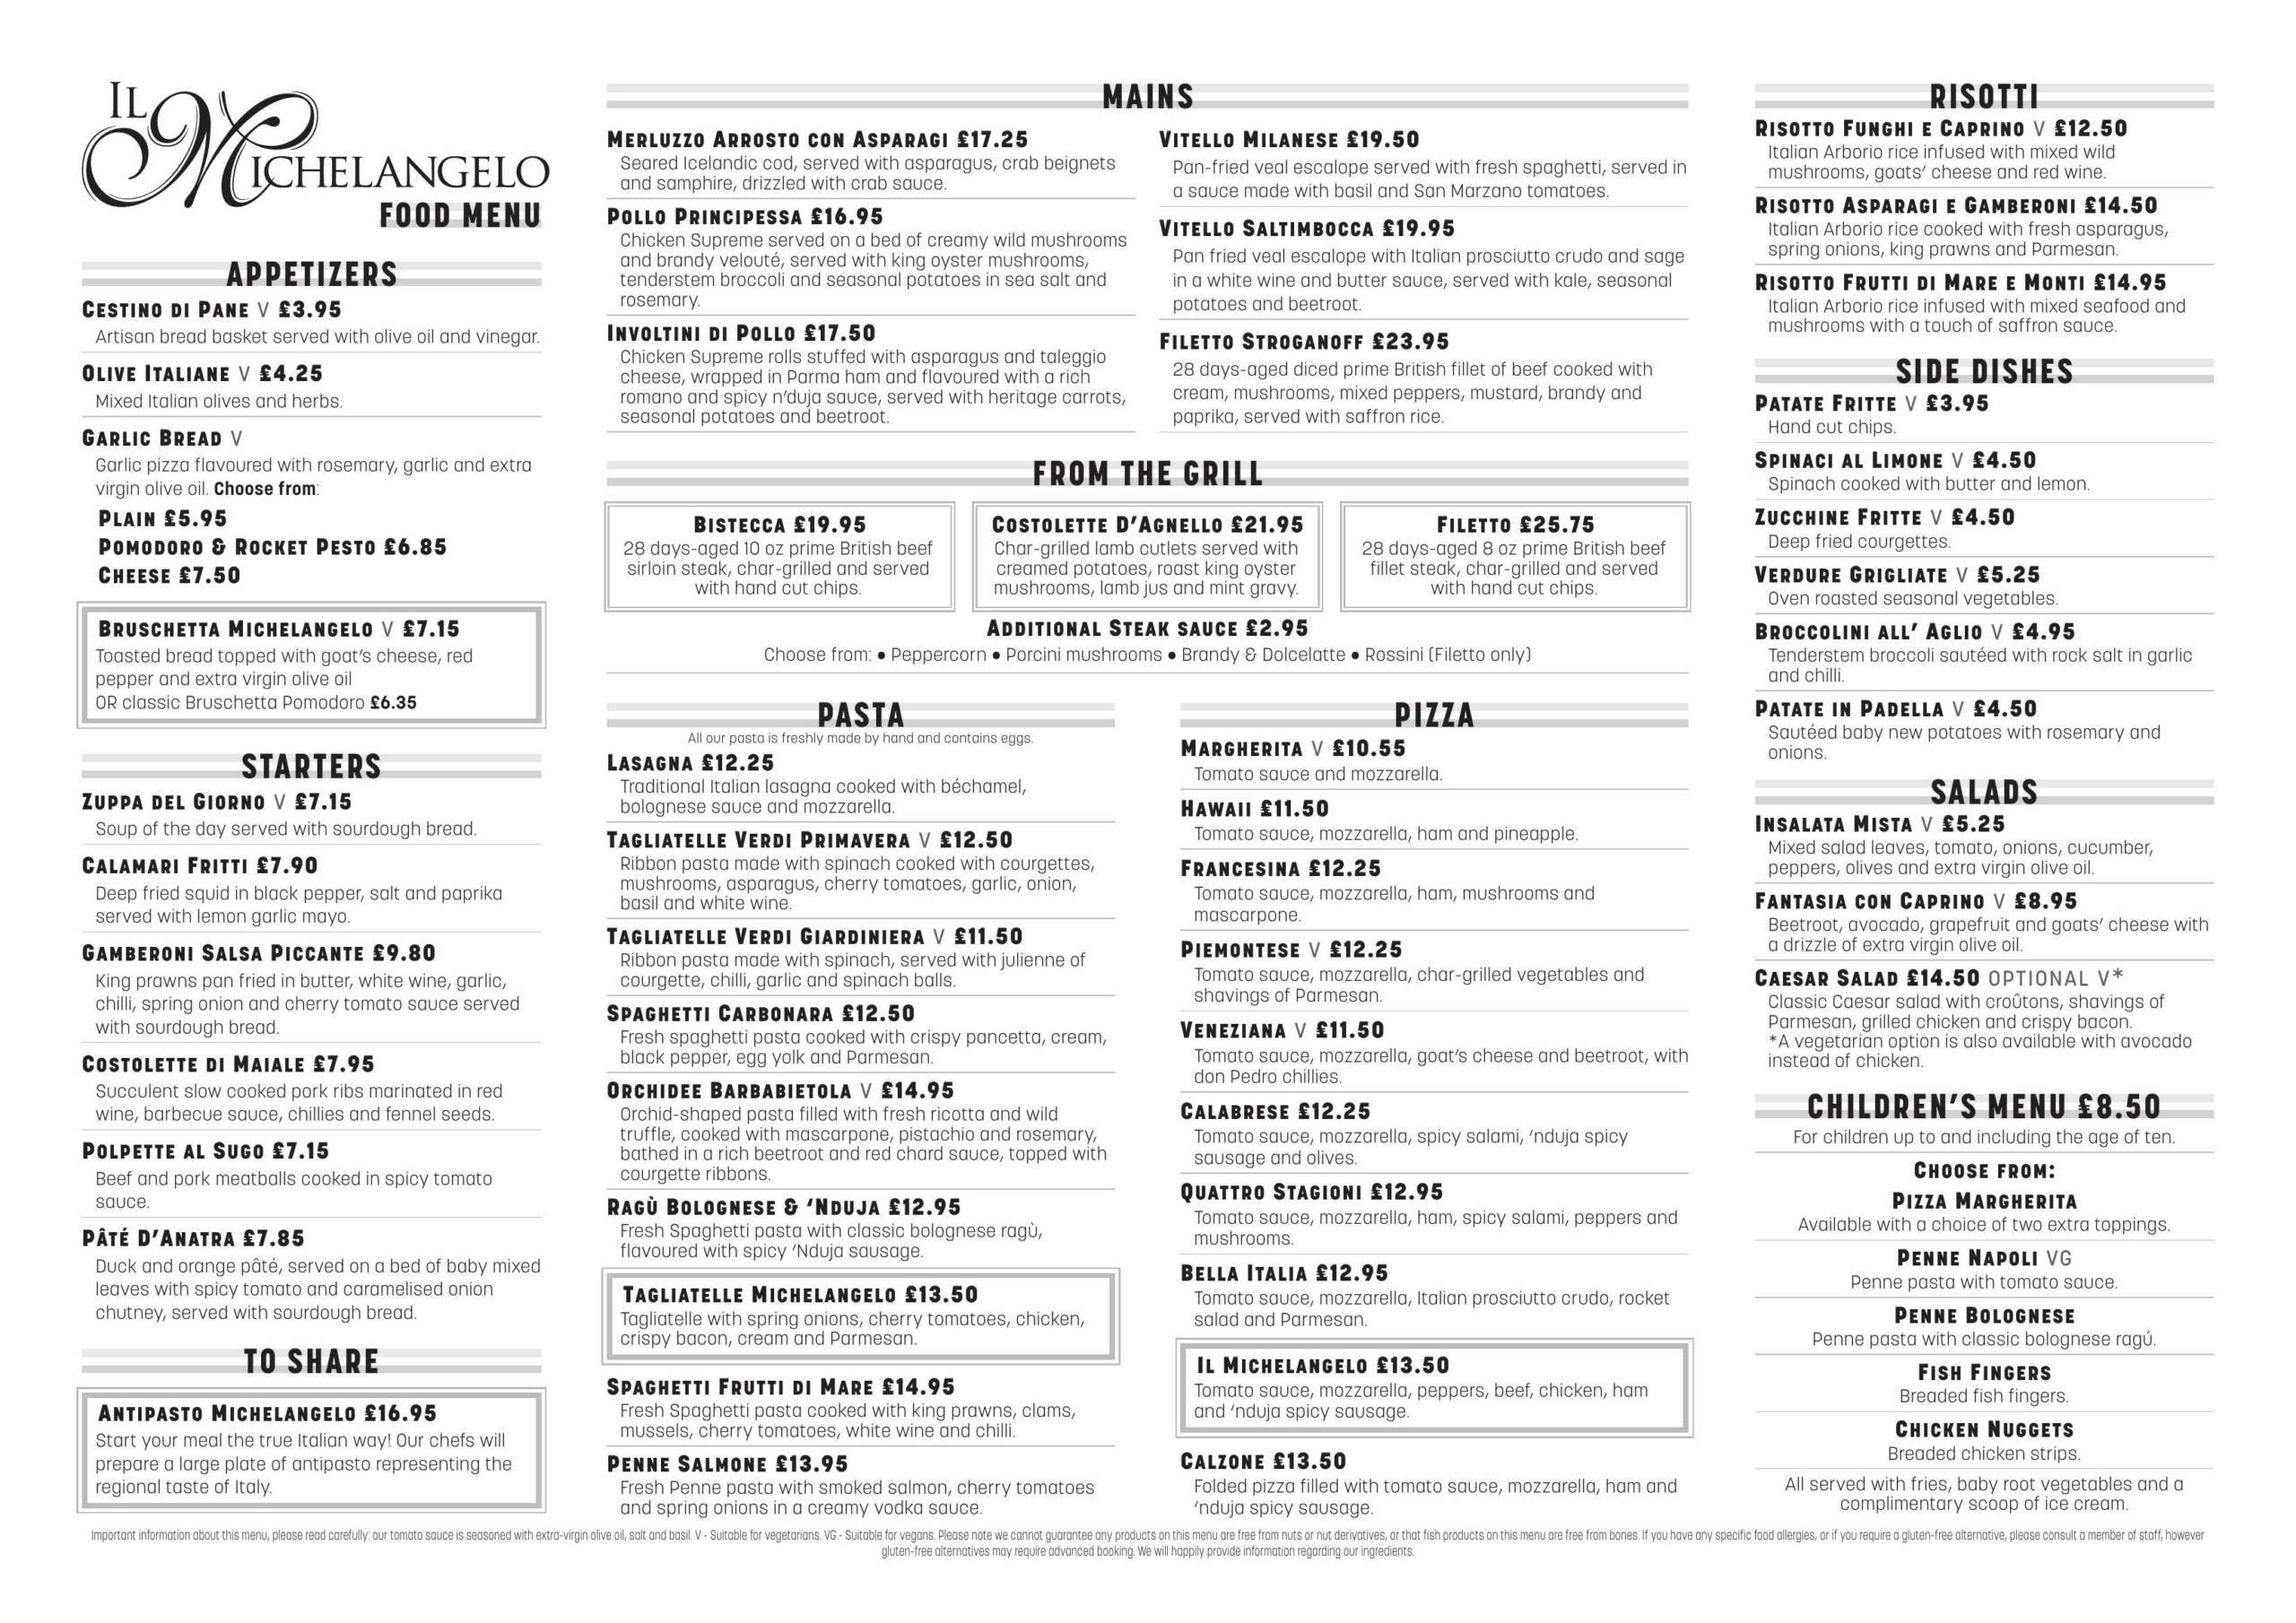 Il Michelangelo Italian Restaurant Brierley Hill, West Midlands - main menu